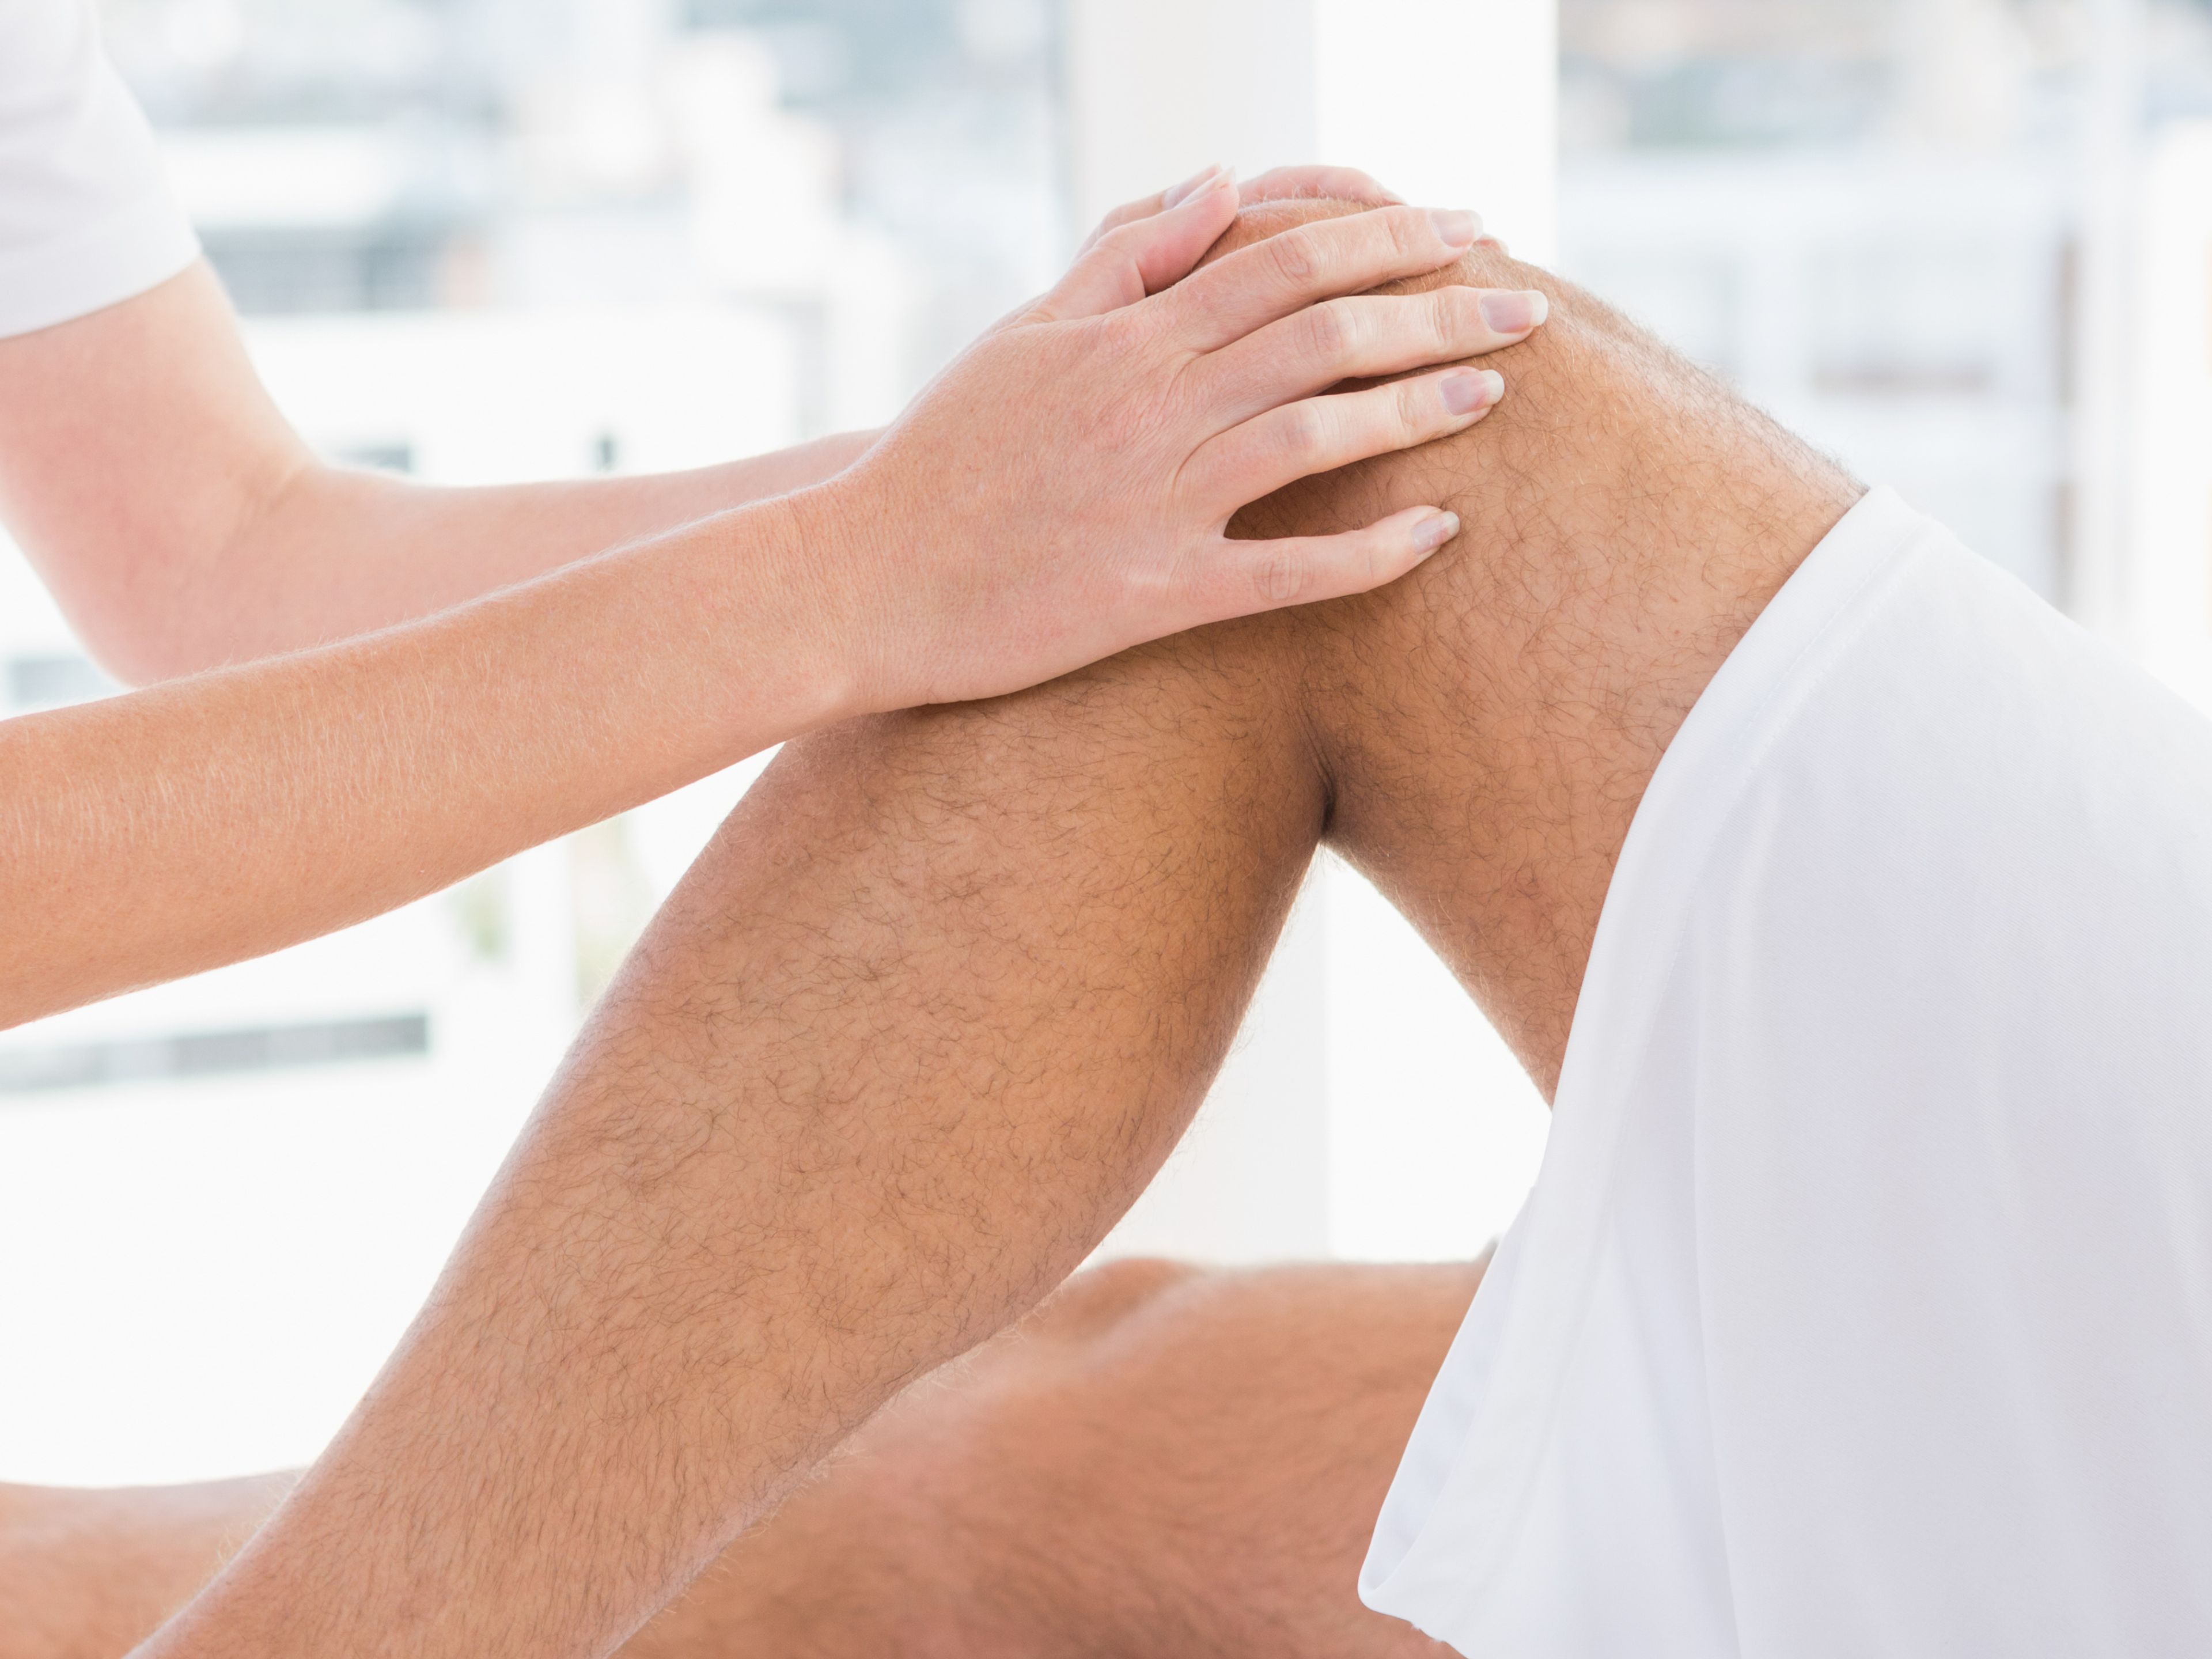 Avoid vigorous massage over your patellar tendon - it can worsen your pain.